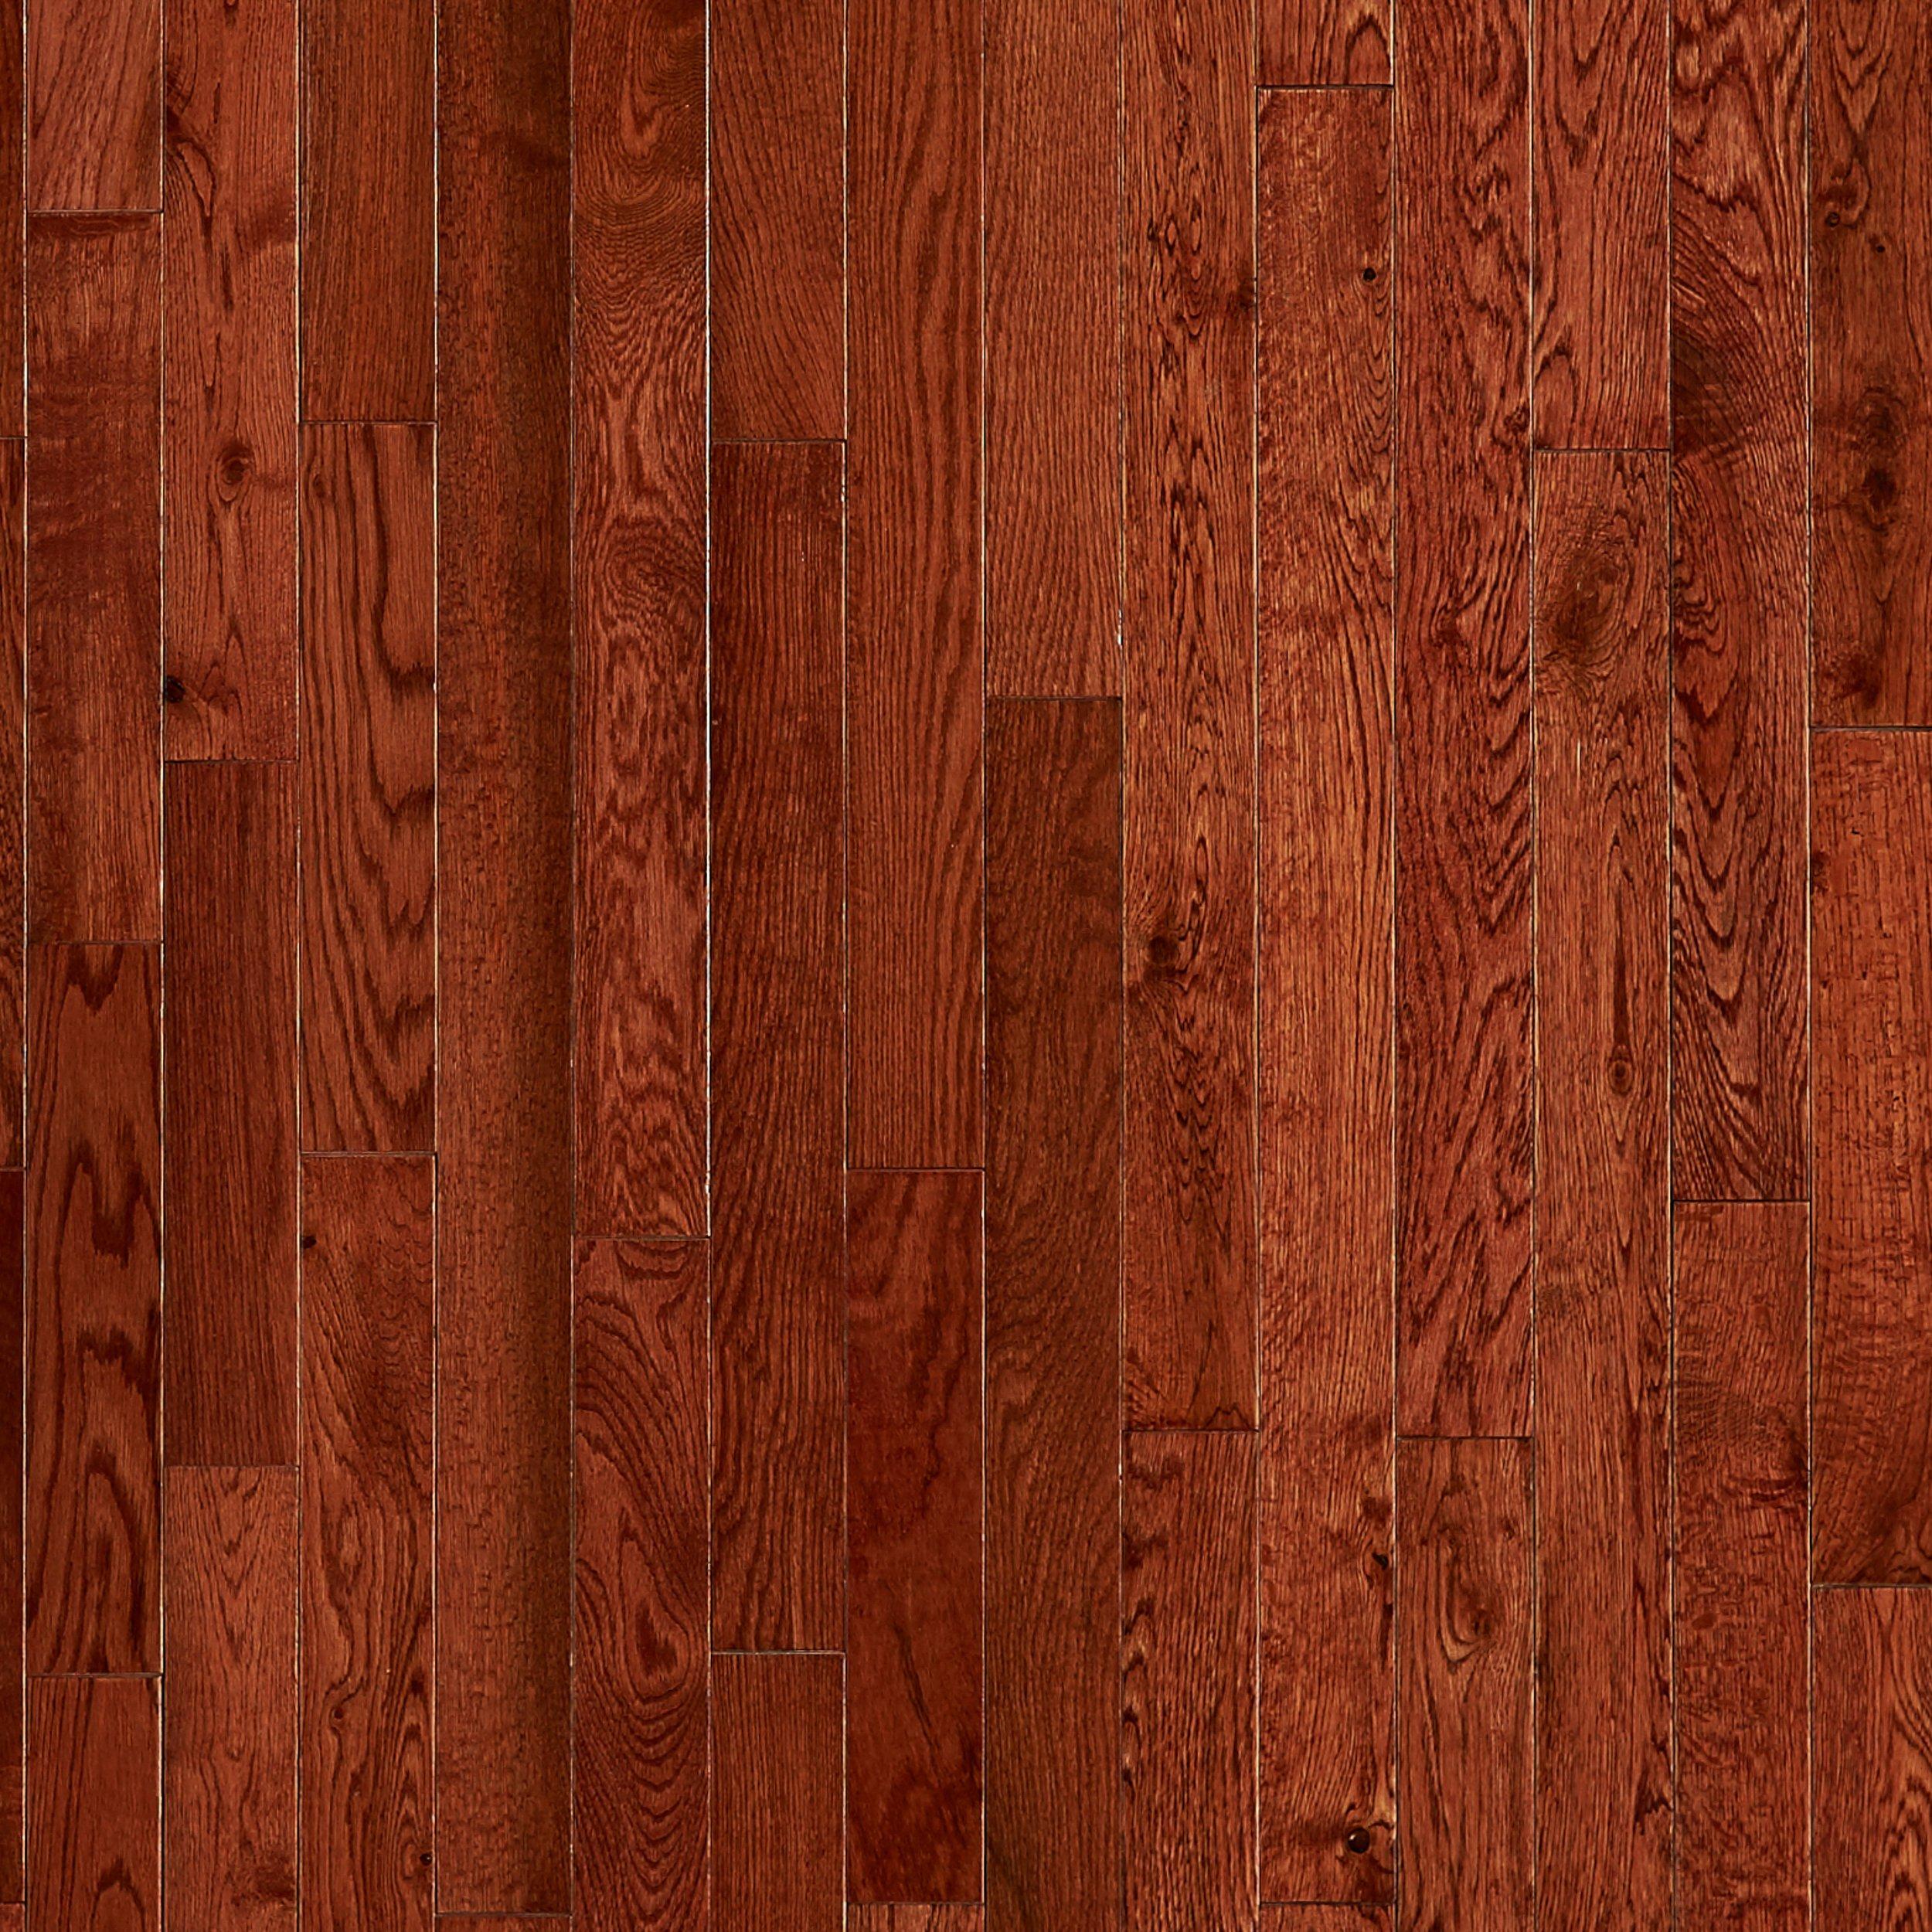  oak hardwood floor texture decorating